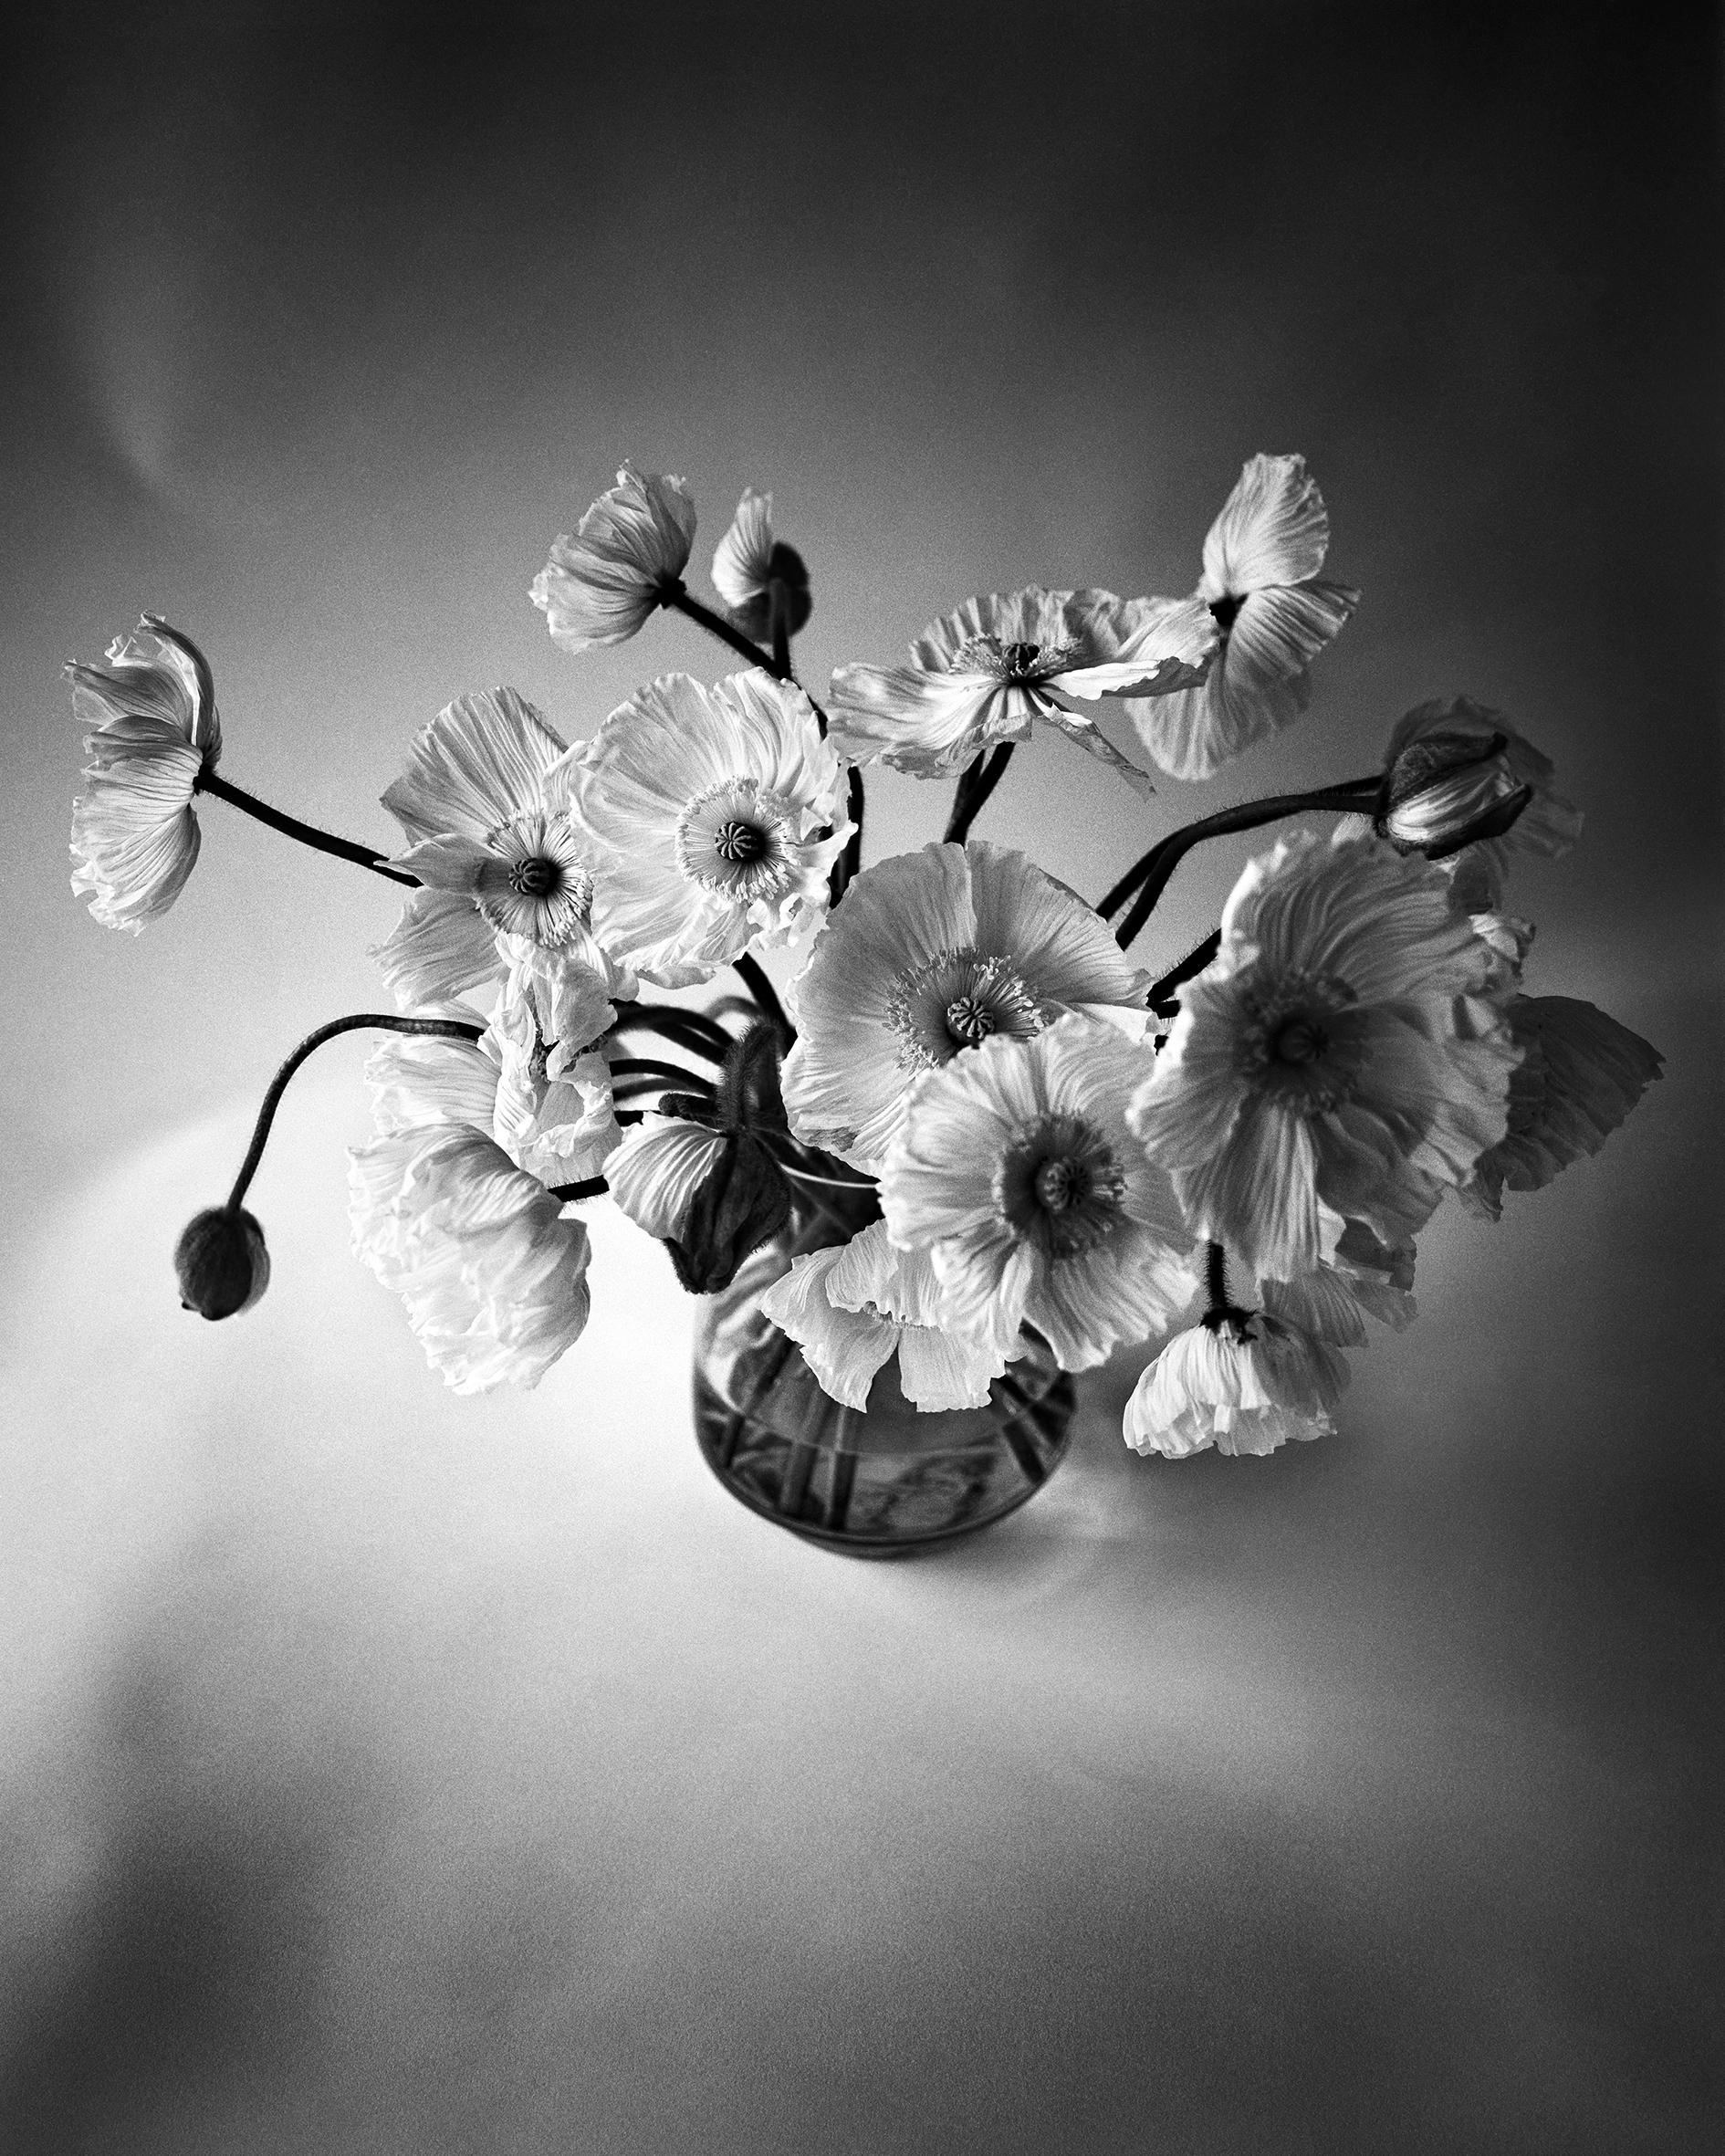 Ugne Pouwell Black and White Photograph – ppy Bunch – Schwarz-Weiß- analoge Blumenfotografie in Schwarz-Weiß, limitierte Auflage von 20 Stück